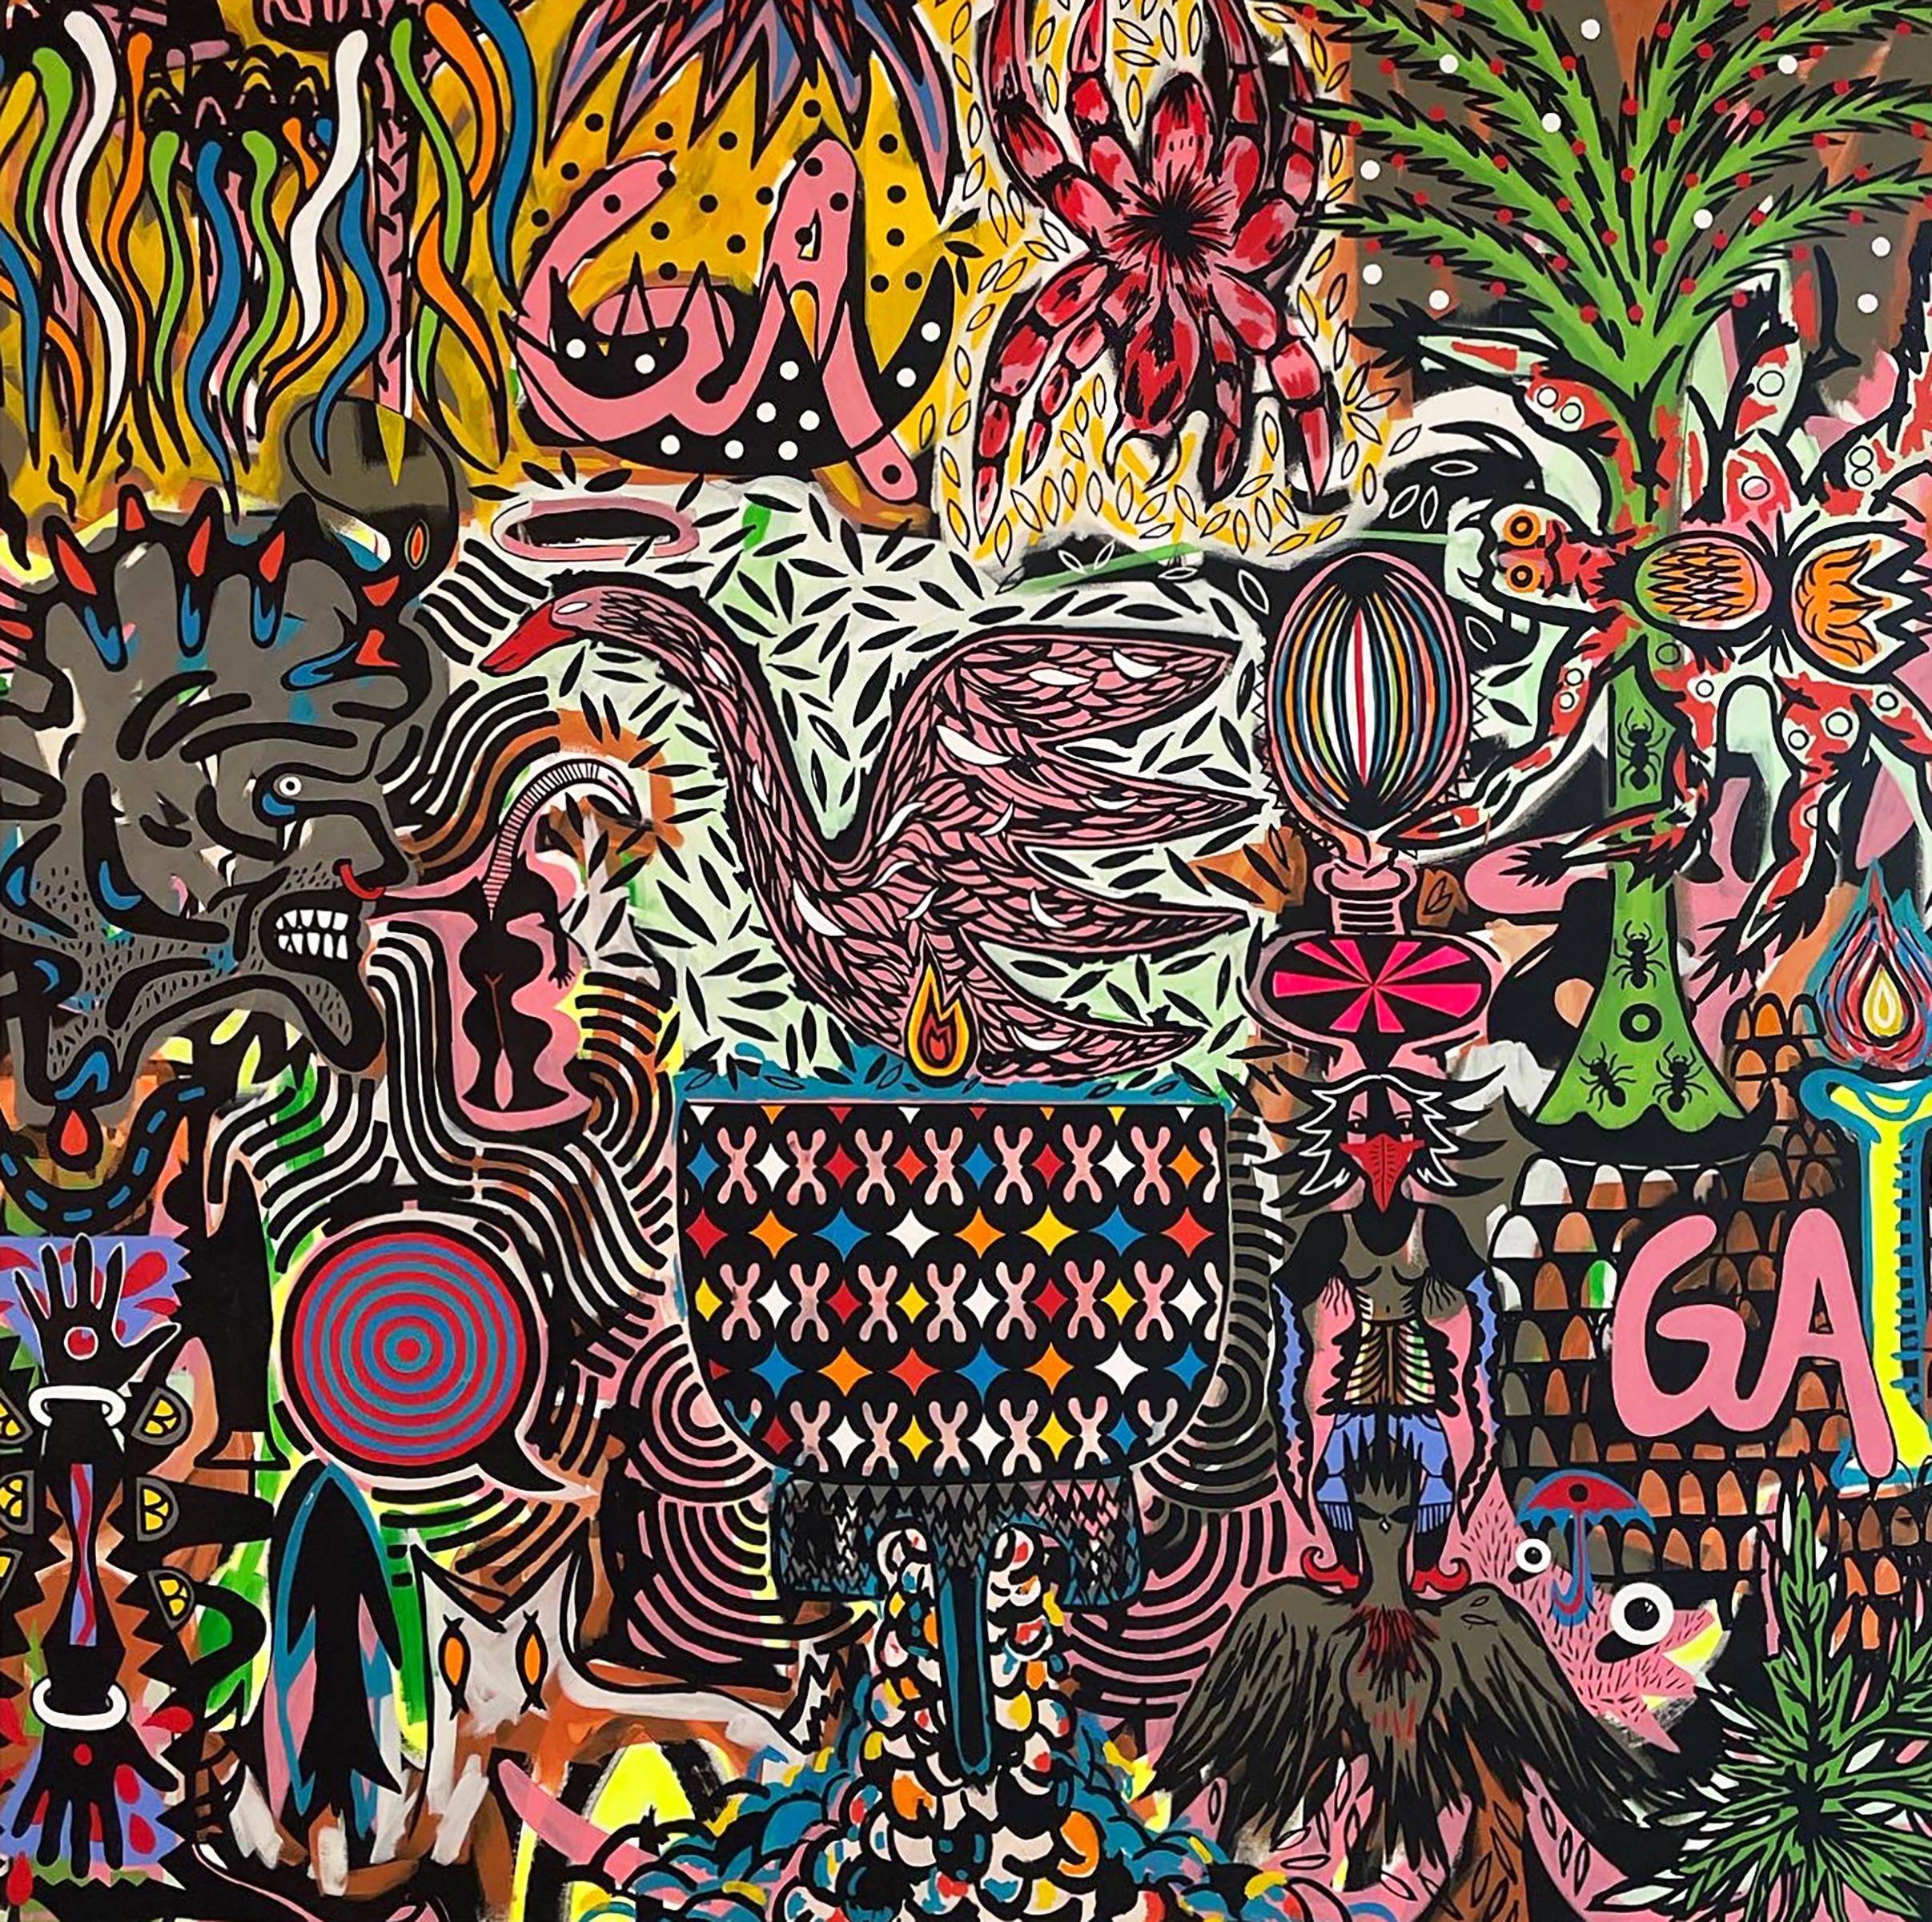 GAGA - peinture surréaliste à grande échelle, colorée, symbolisme, motifs